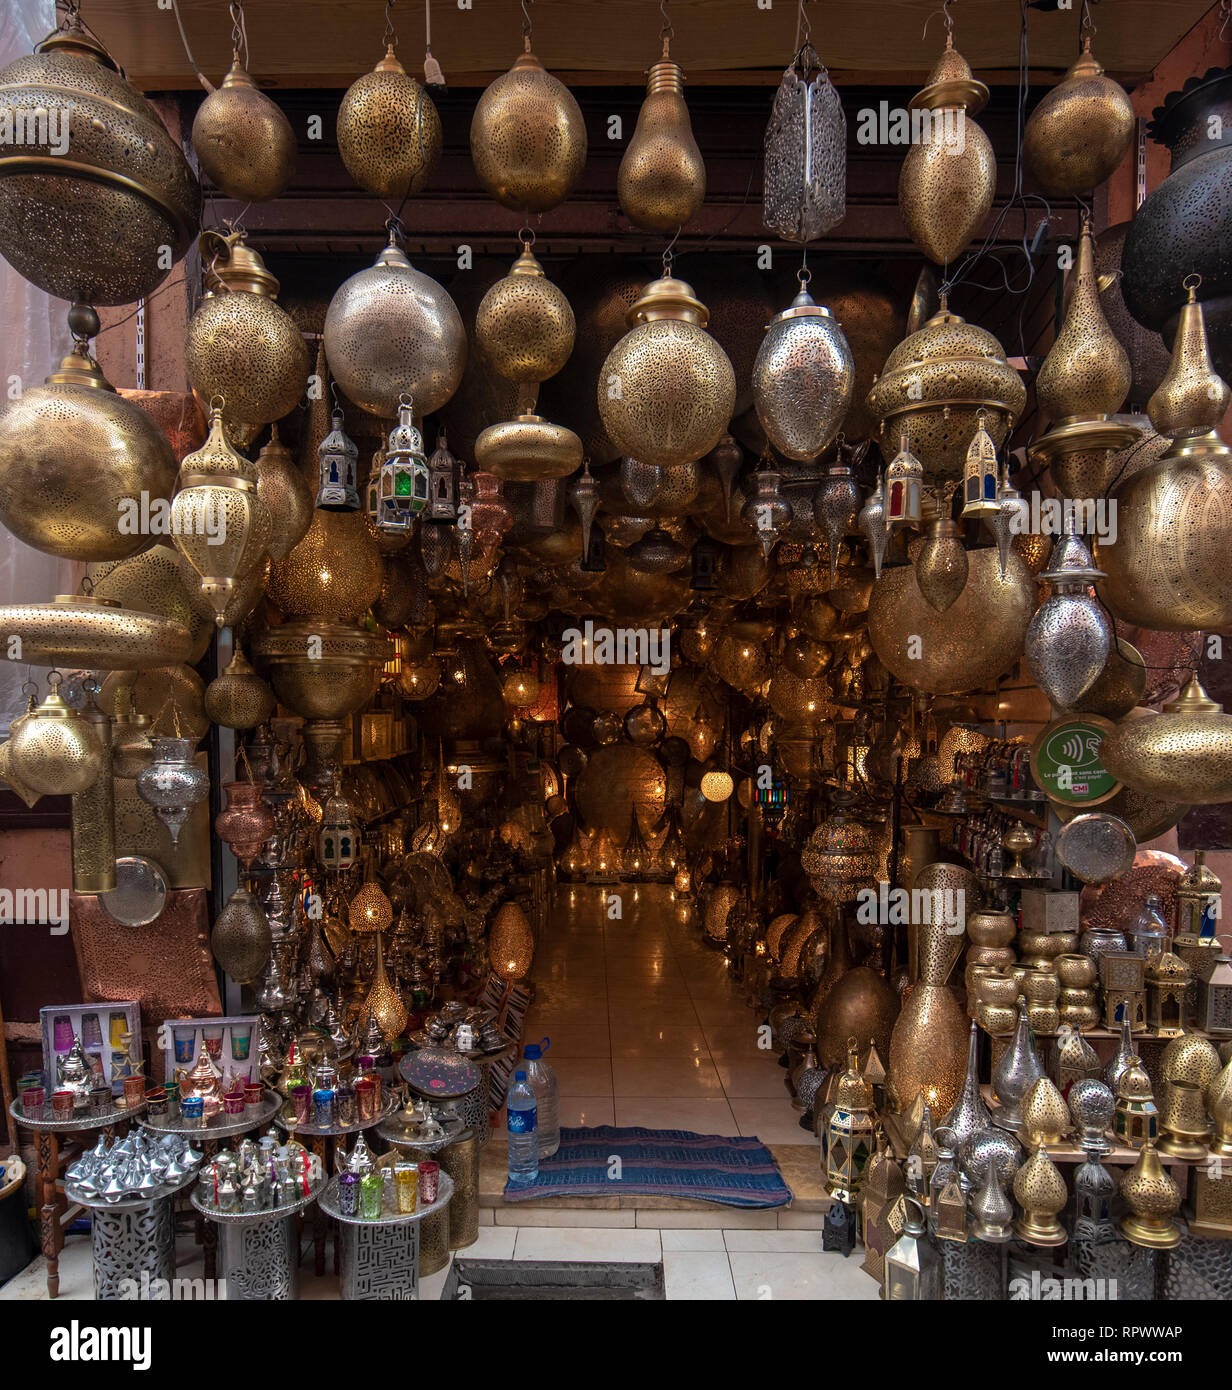 Marrakech, Maroc - fond de verre traditionnel marocain et lampes en métal en boutique dans la médina de Marrakech, Maroc Banque D'Images